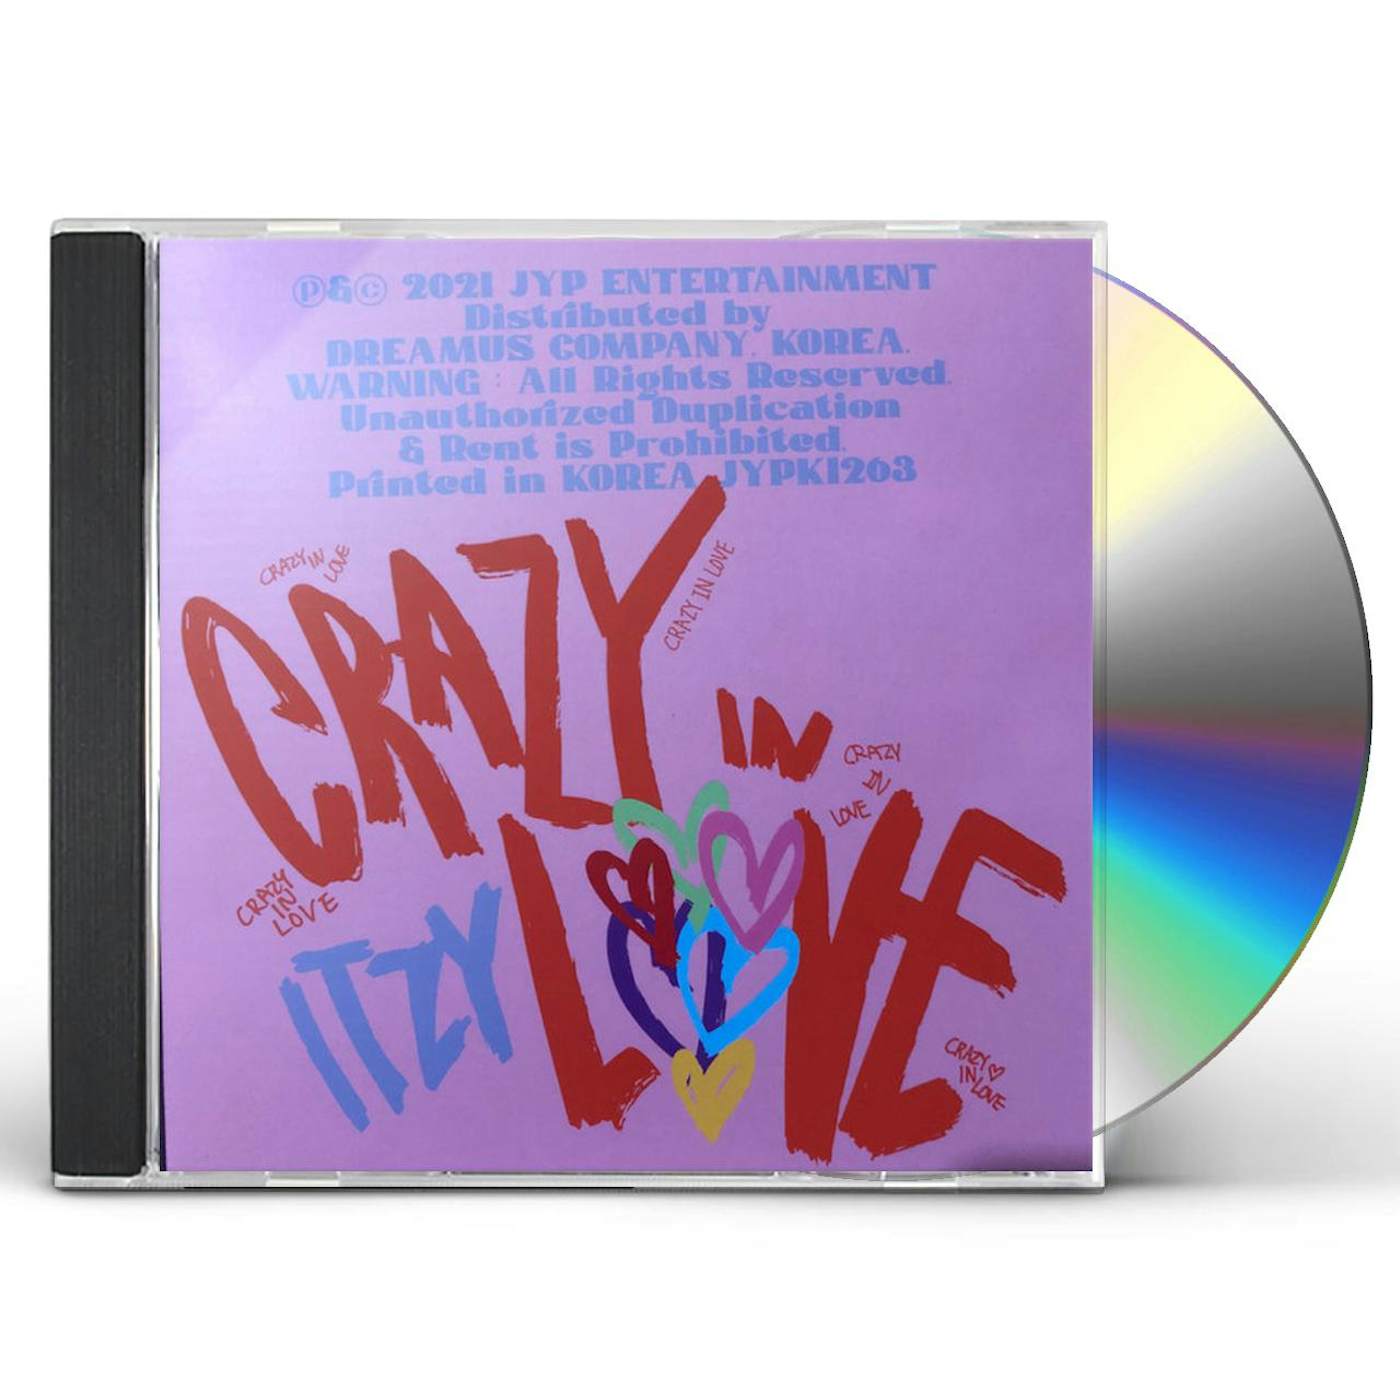 ITZY - 1st Full Album - CRAZY IN LOVE – SarangHello